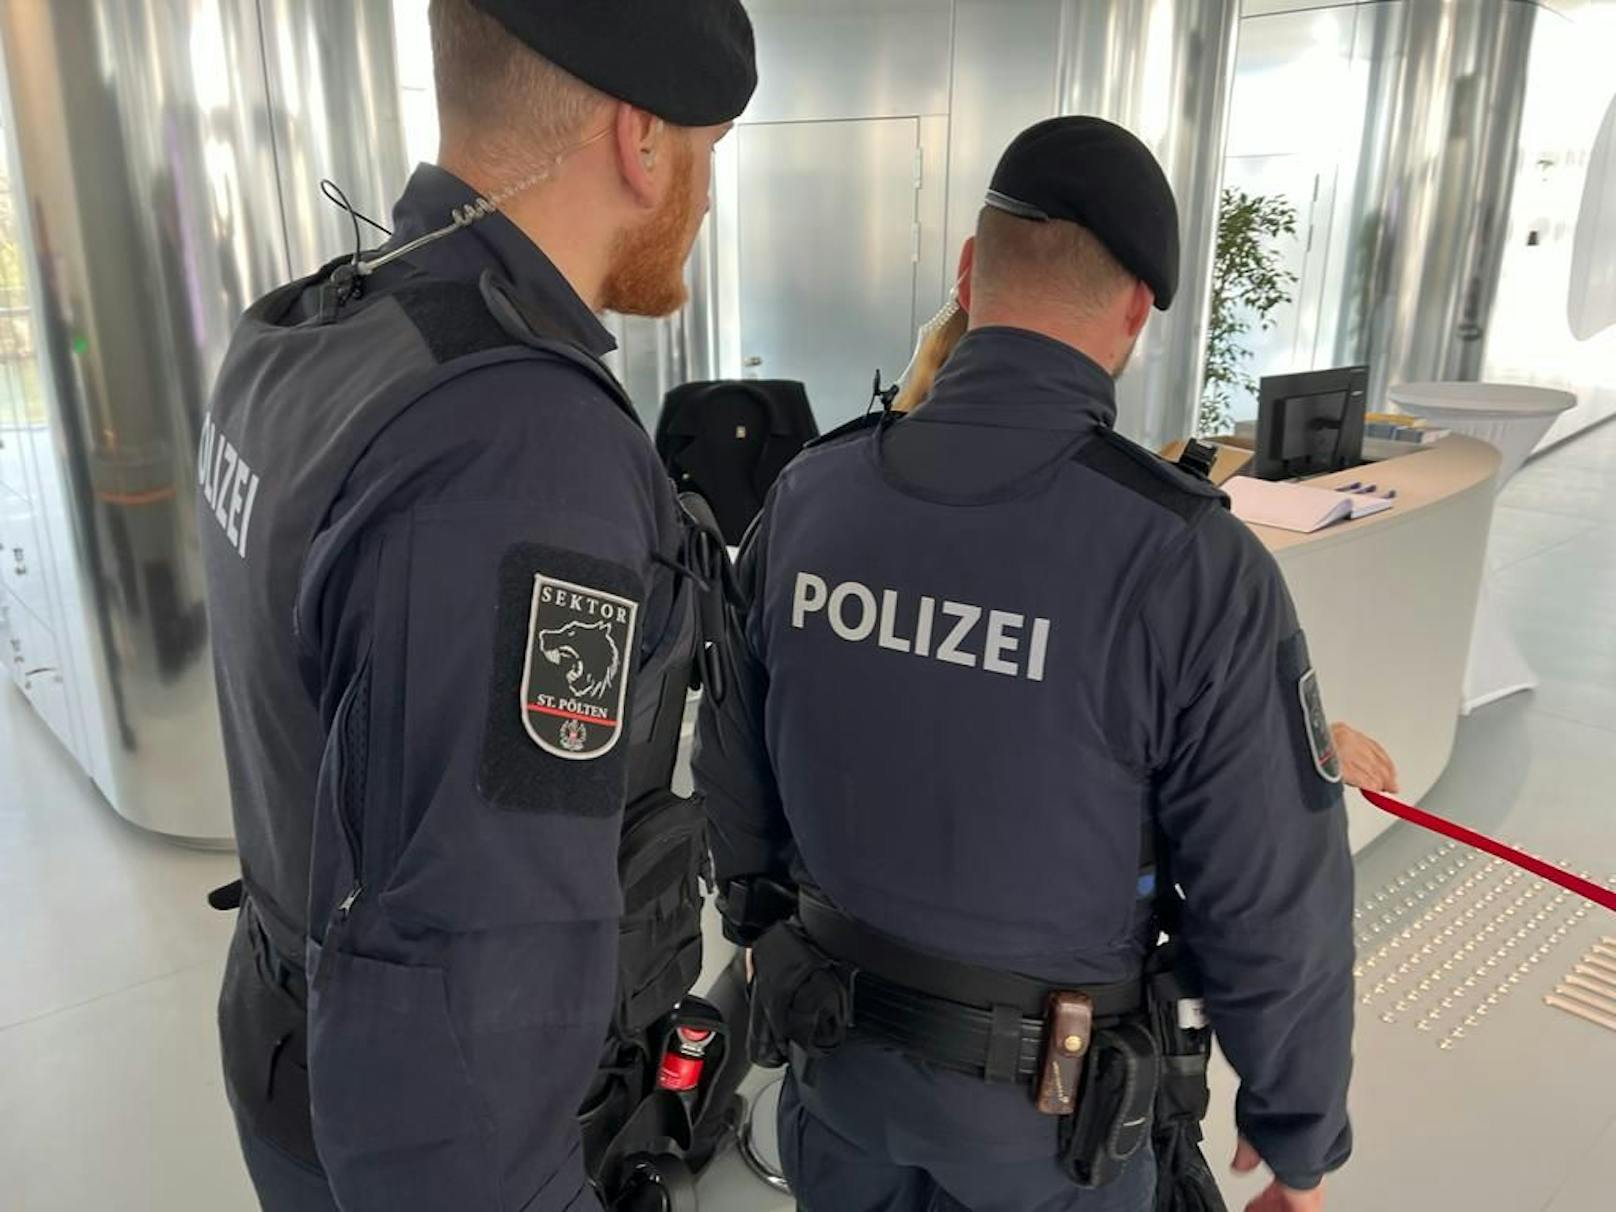 Polizeiaufgebot beim Eingang in den Landtag.